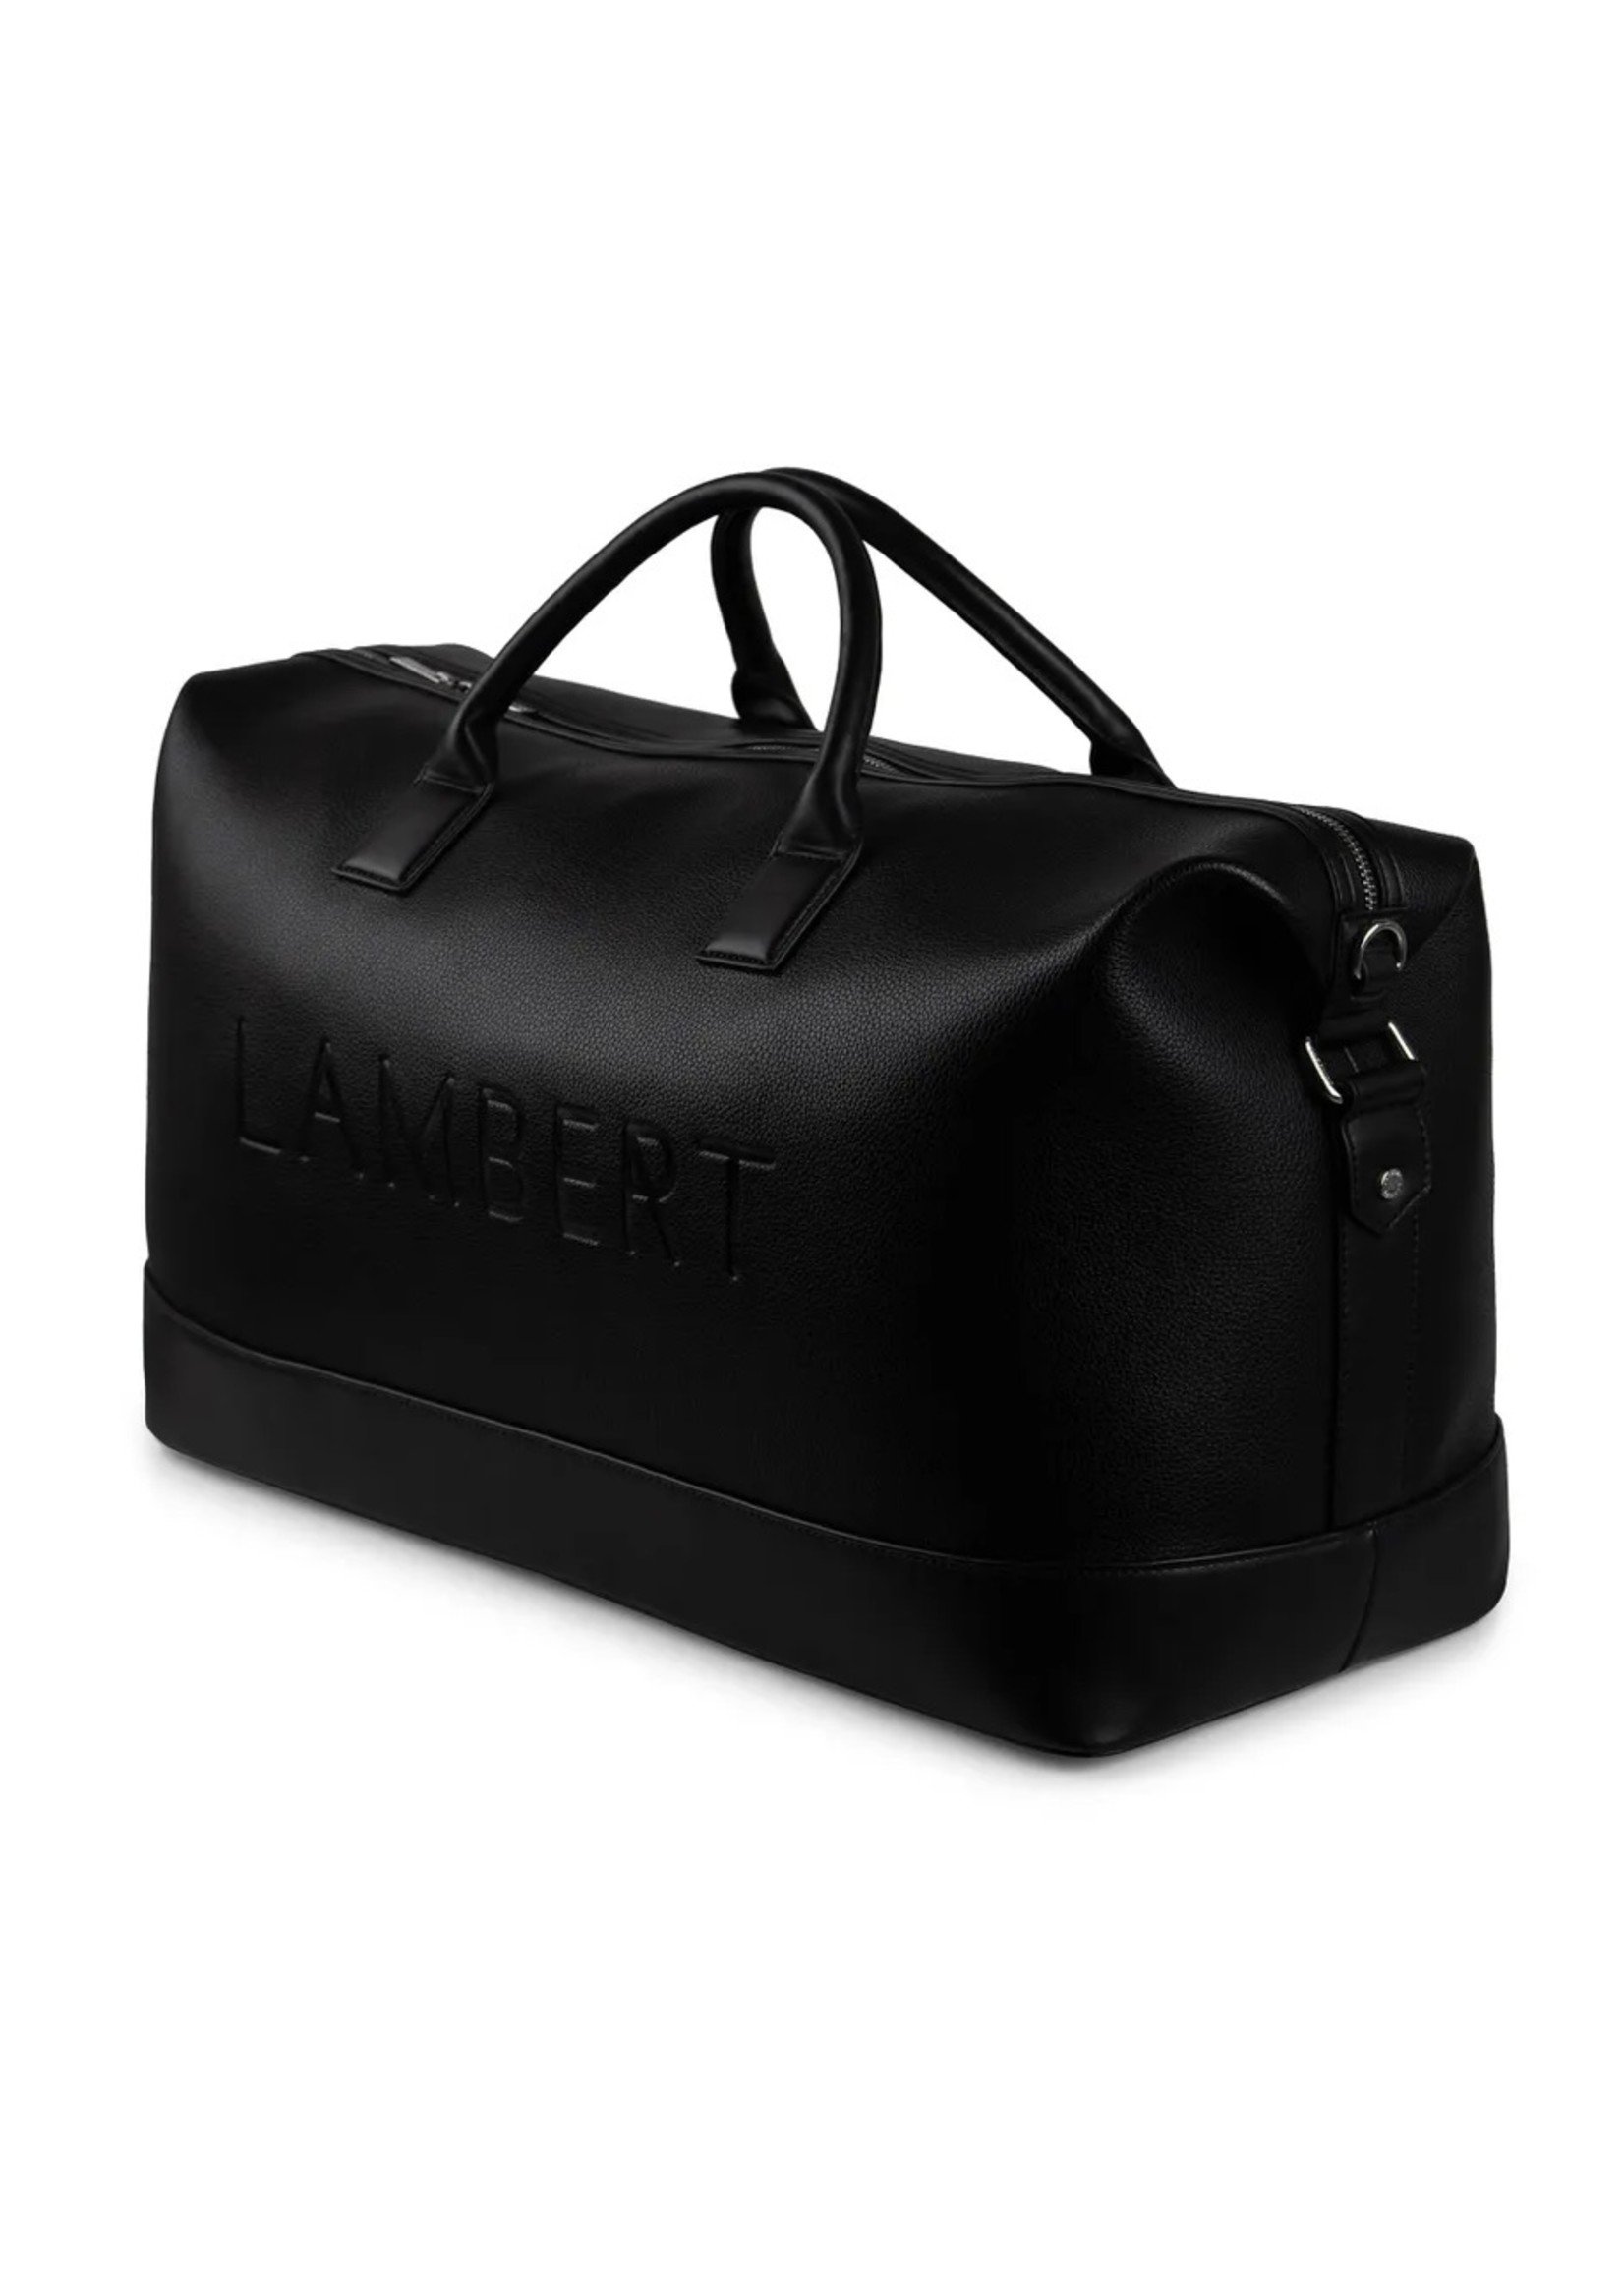 Lambert Lambert - June